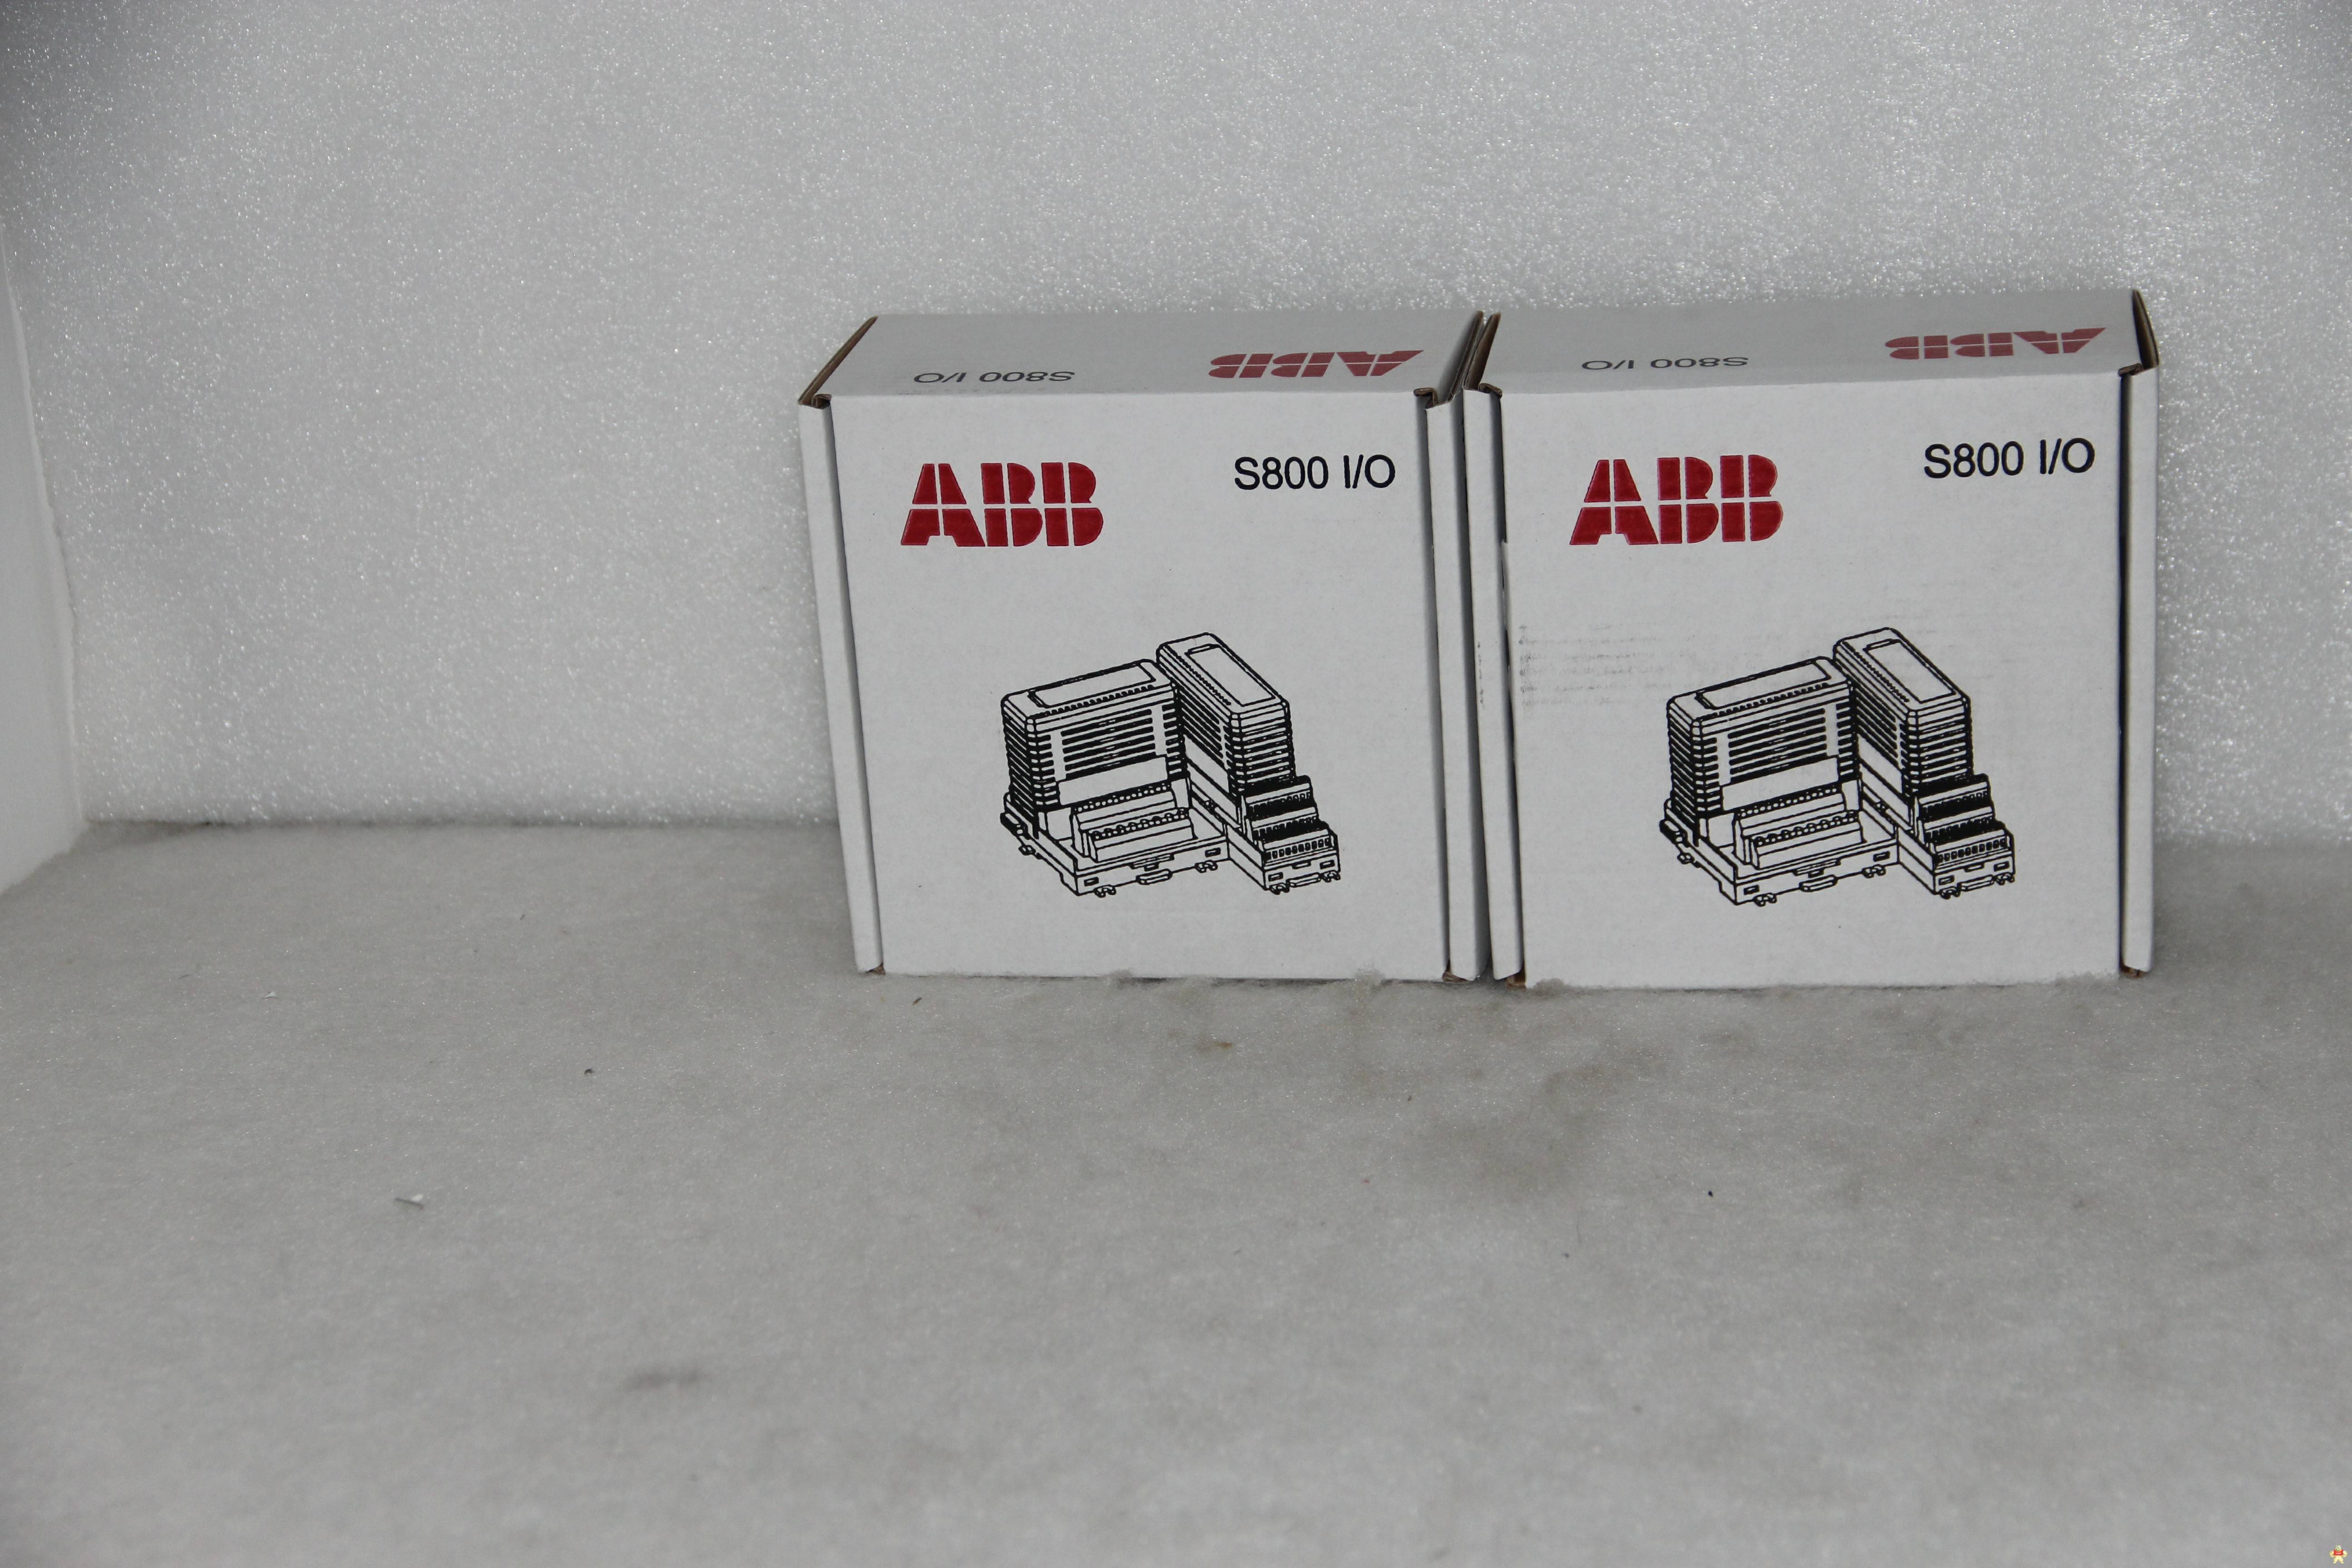 ABB TU804-1 现货价格面议 TU804-1,ABB,低价,现货,瑞士